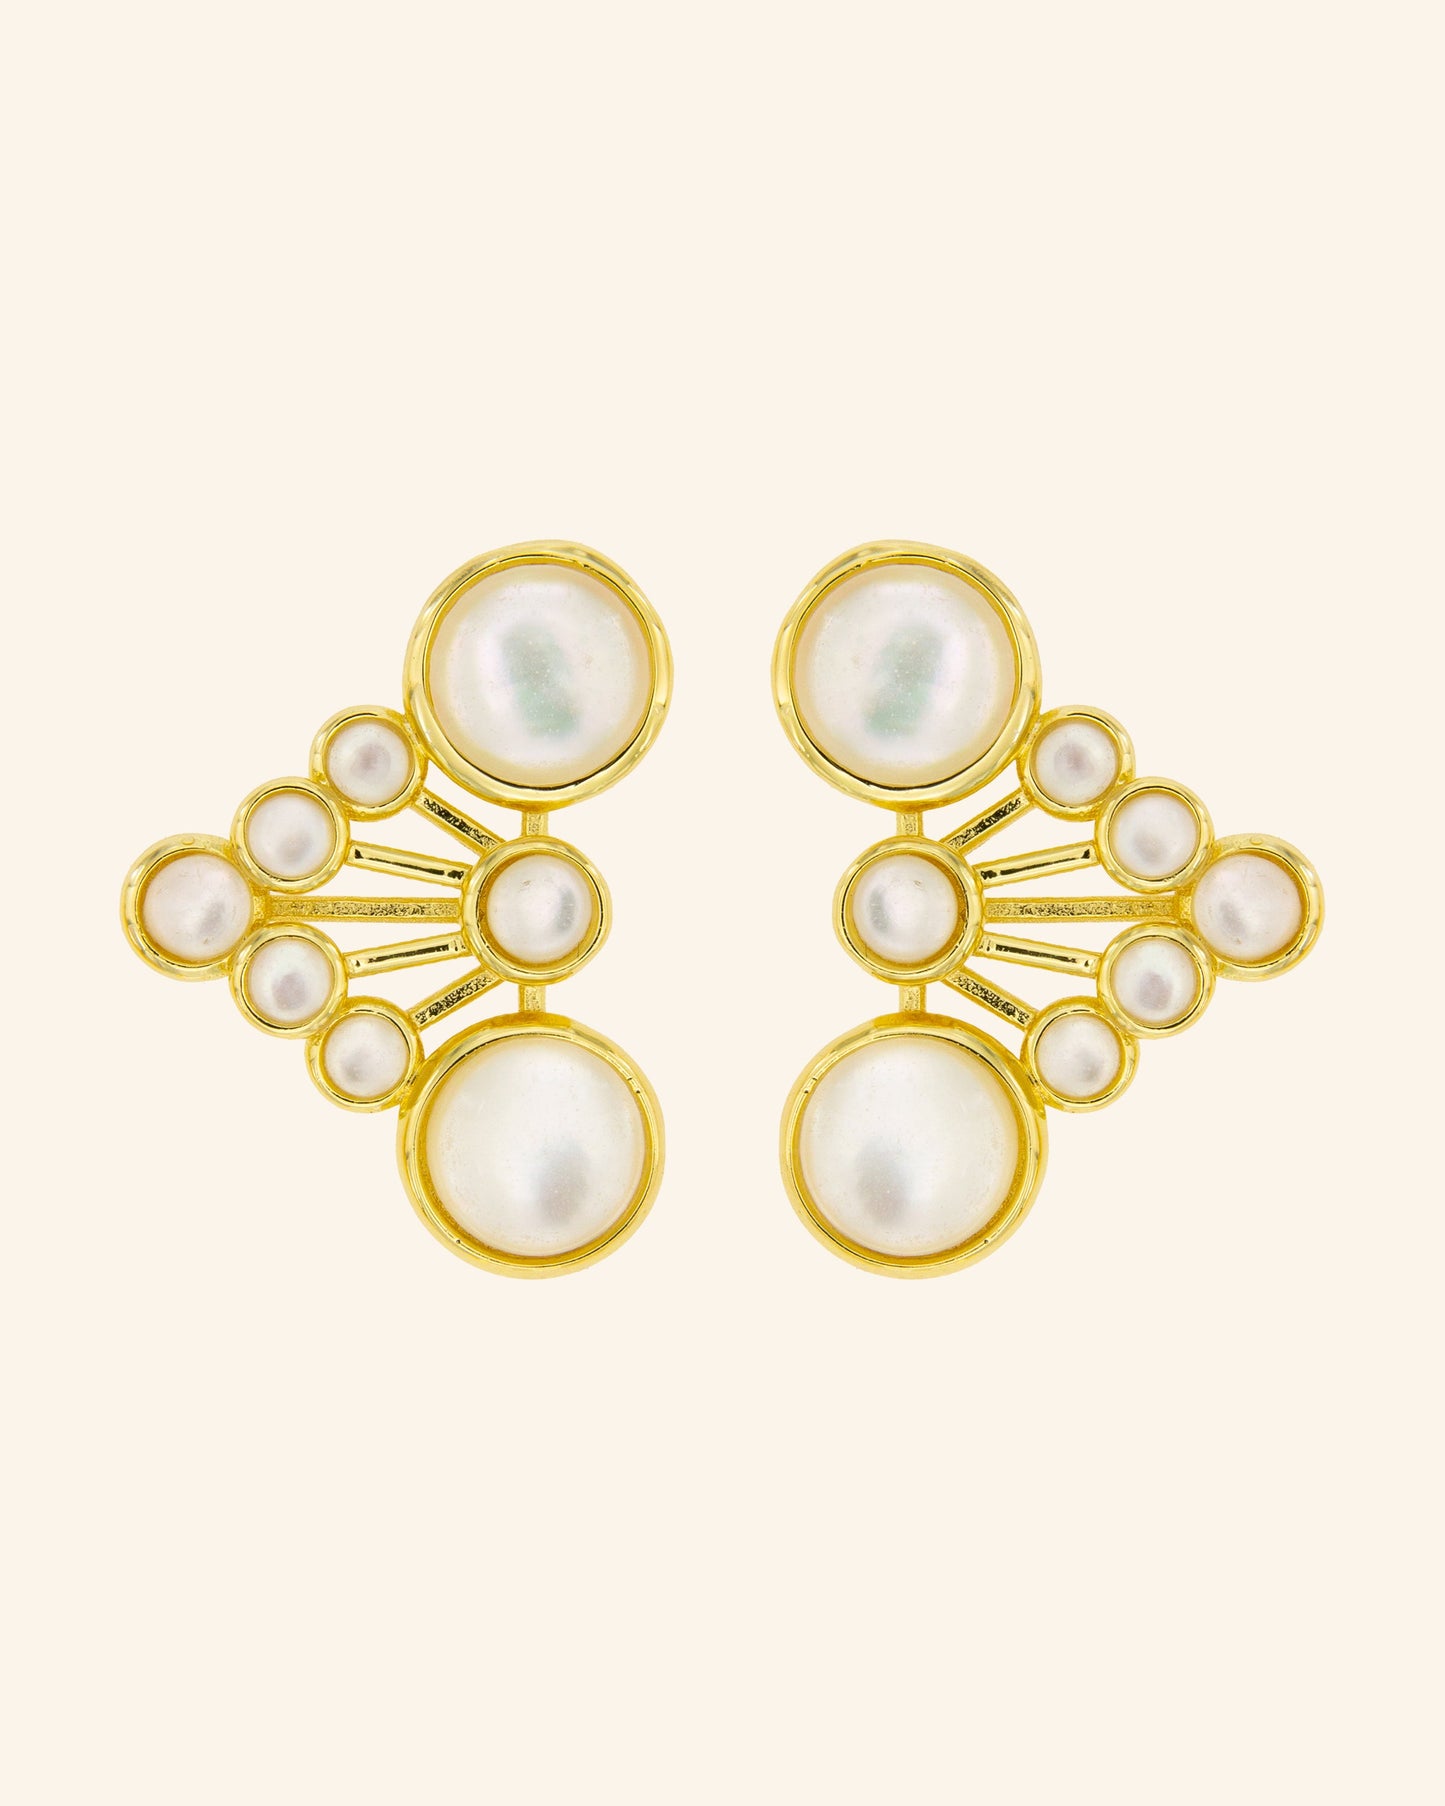 Kiemen white mother-of-pearl earrings